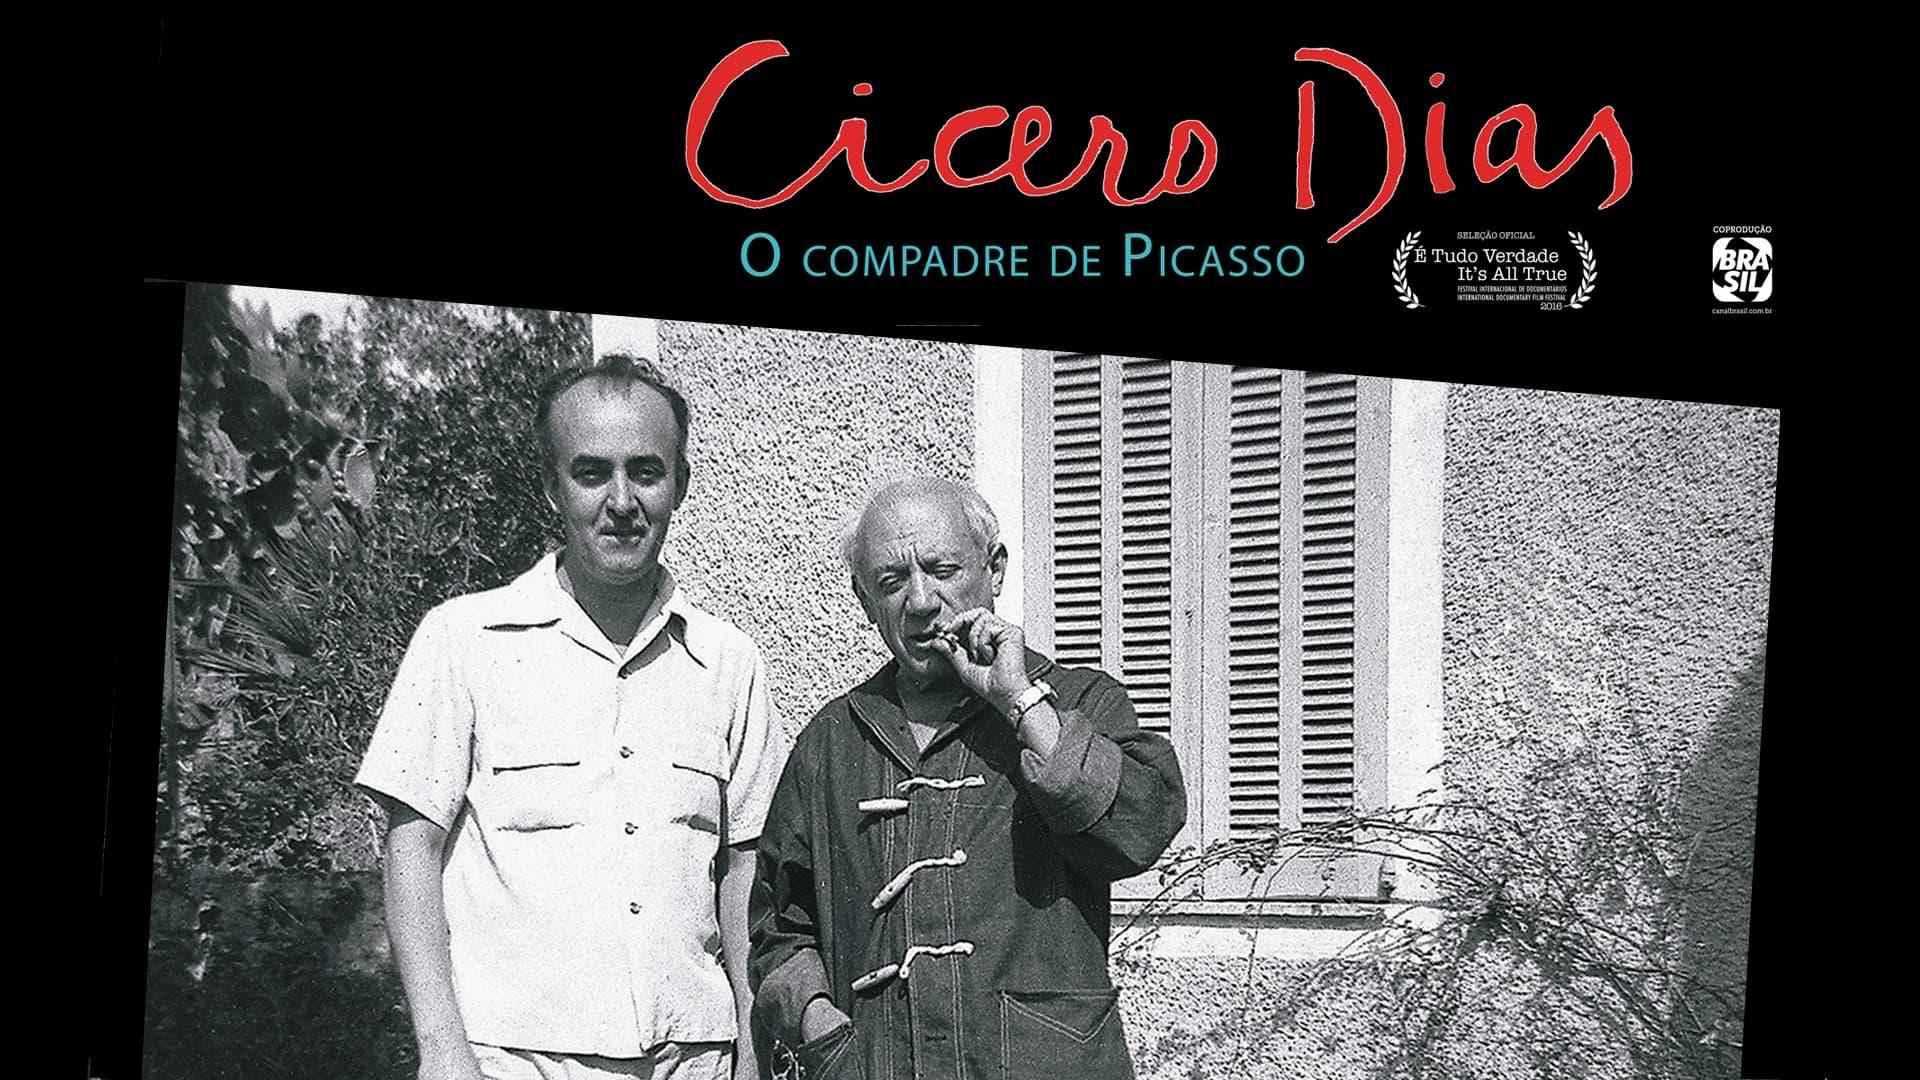 Cícero Dias, o Compadre de Picasso backdrop